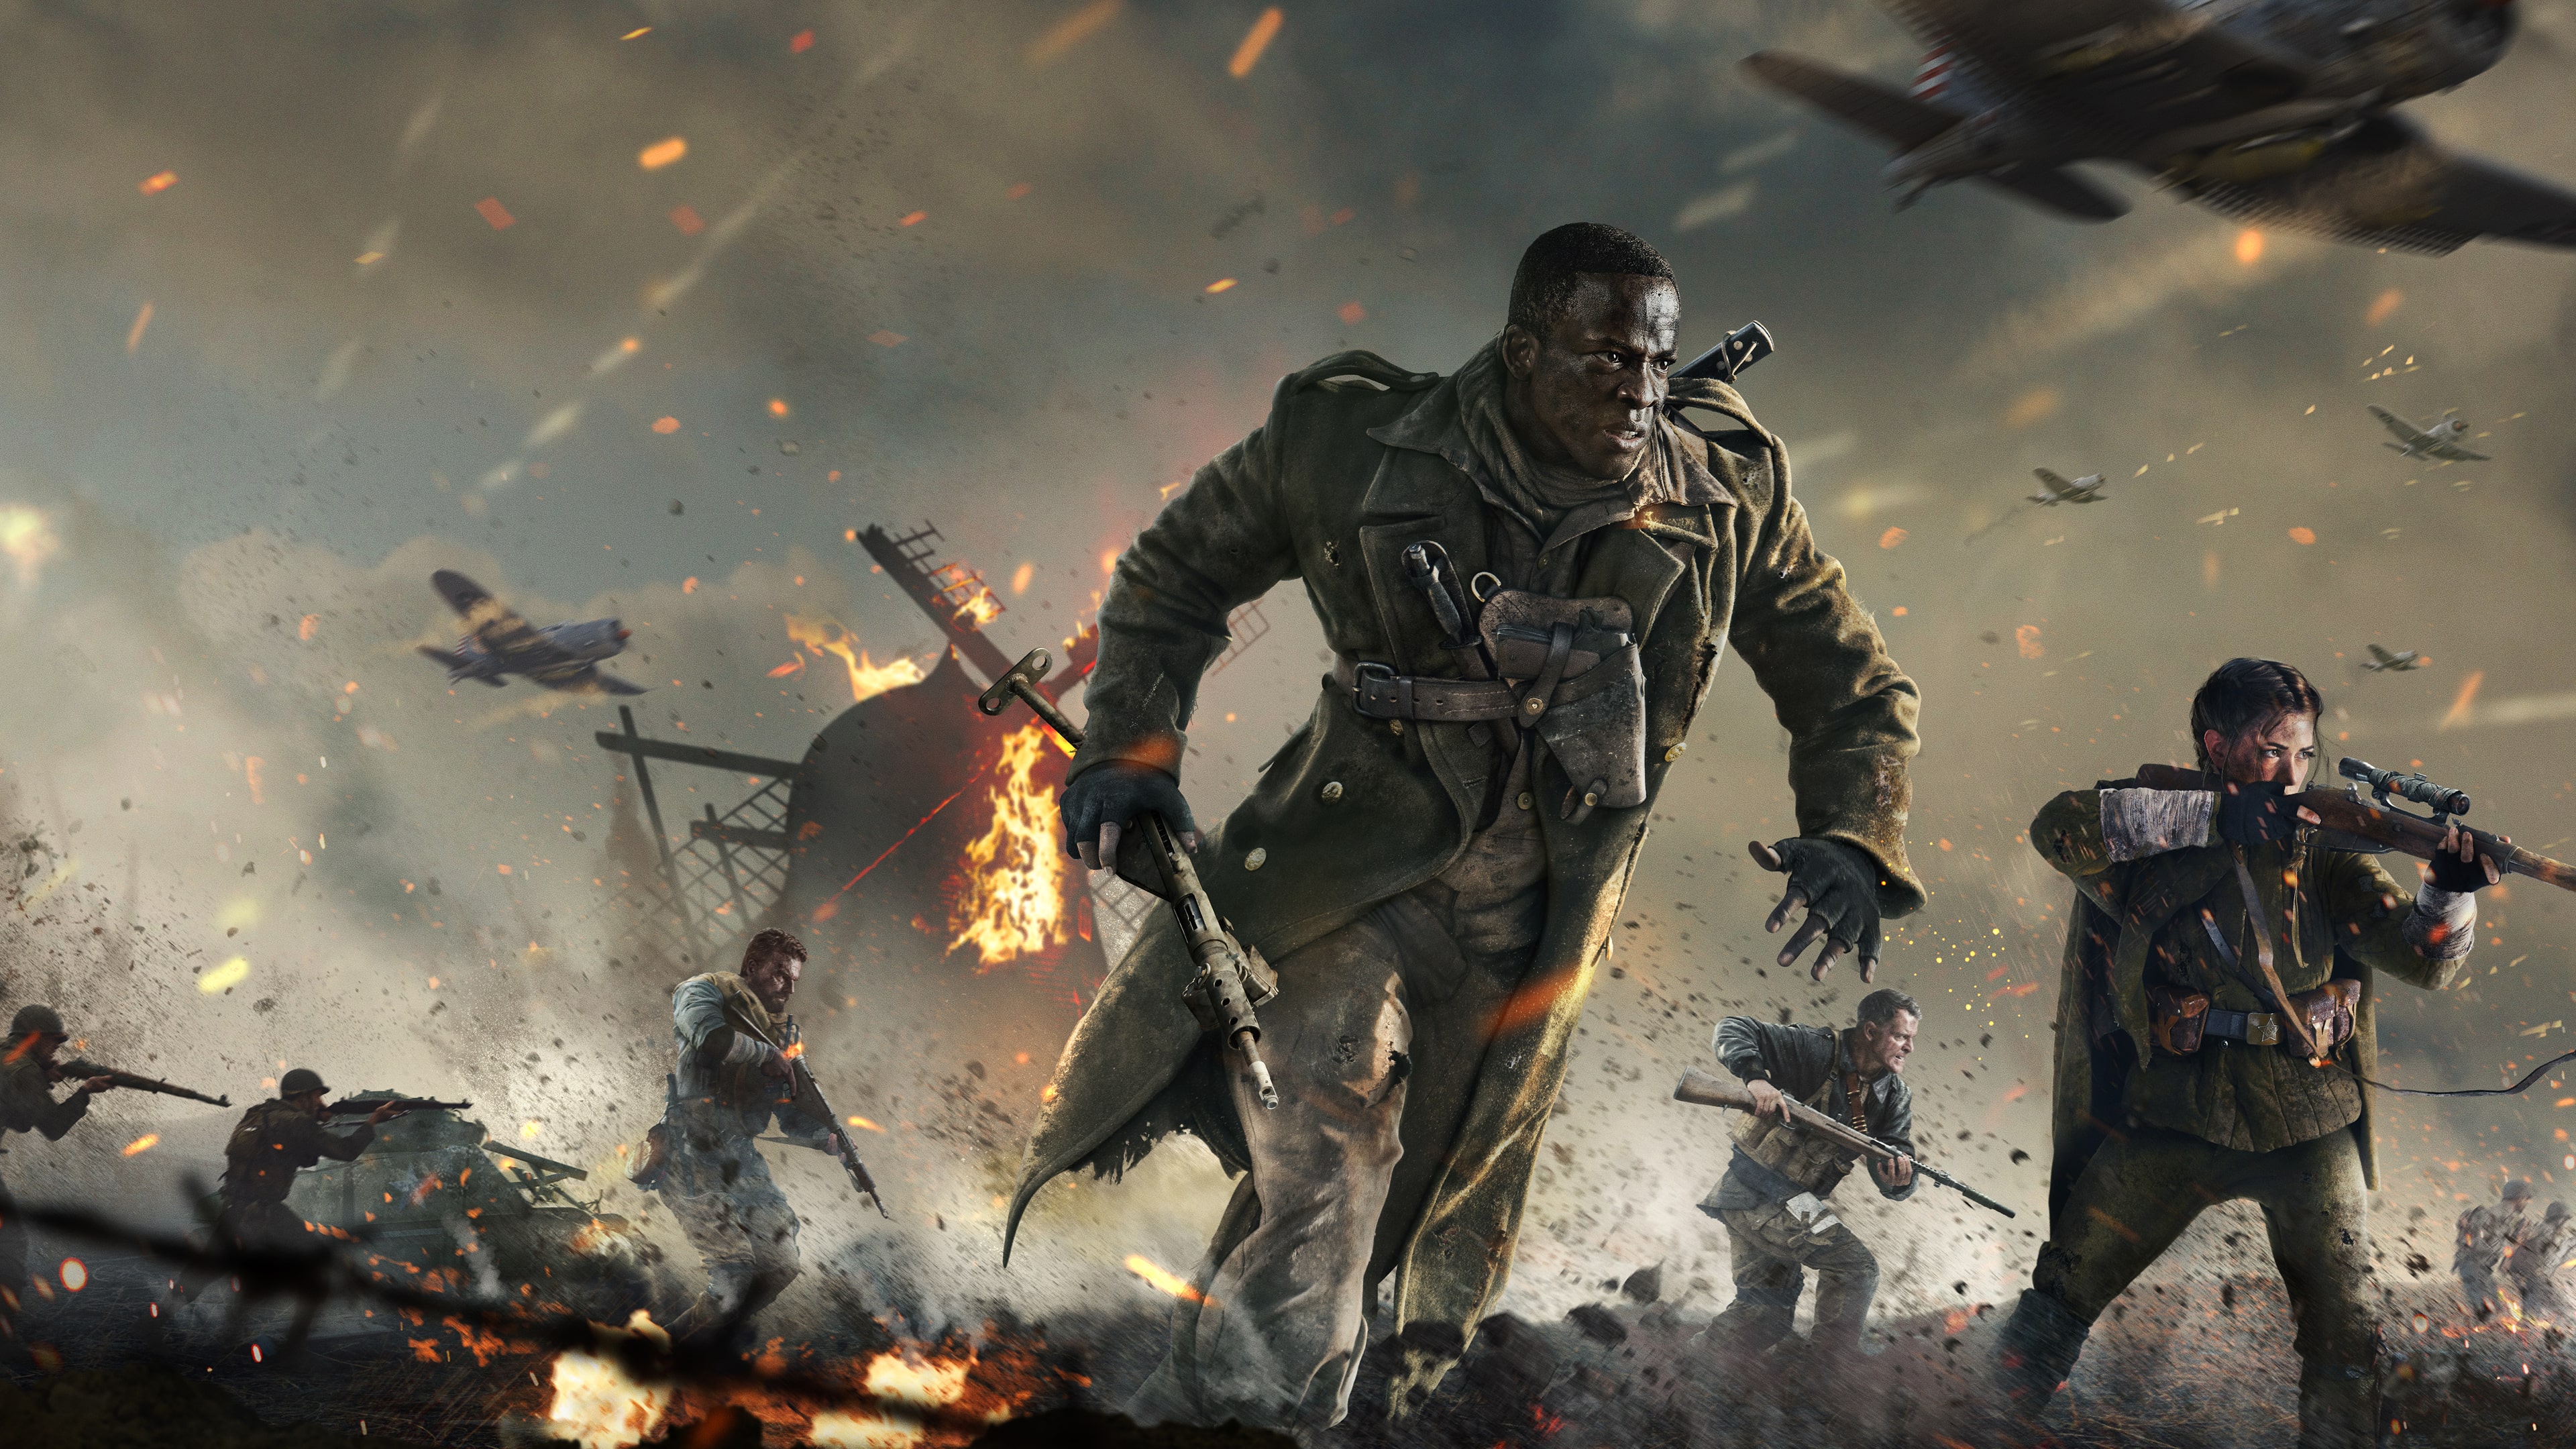 Call of Duty®: Vanguard - Edición Definitiva